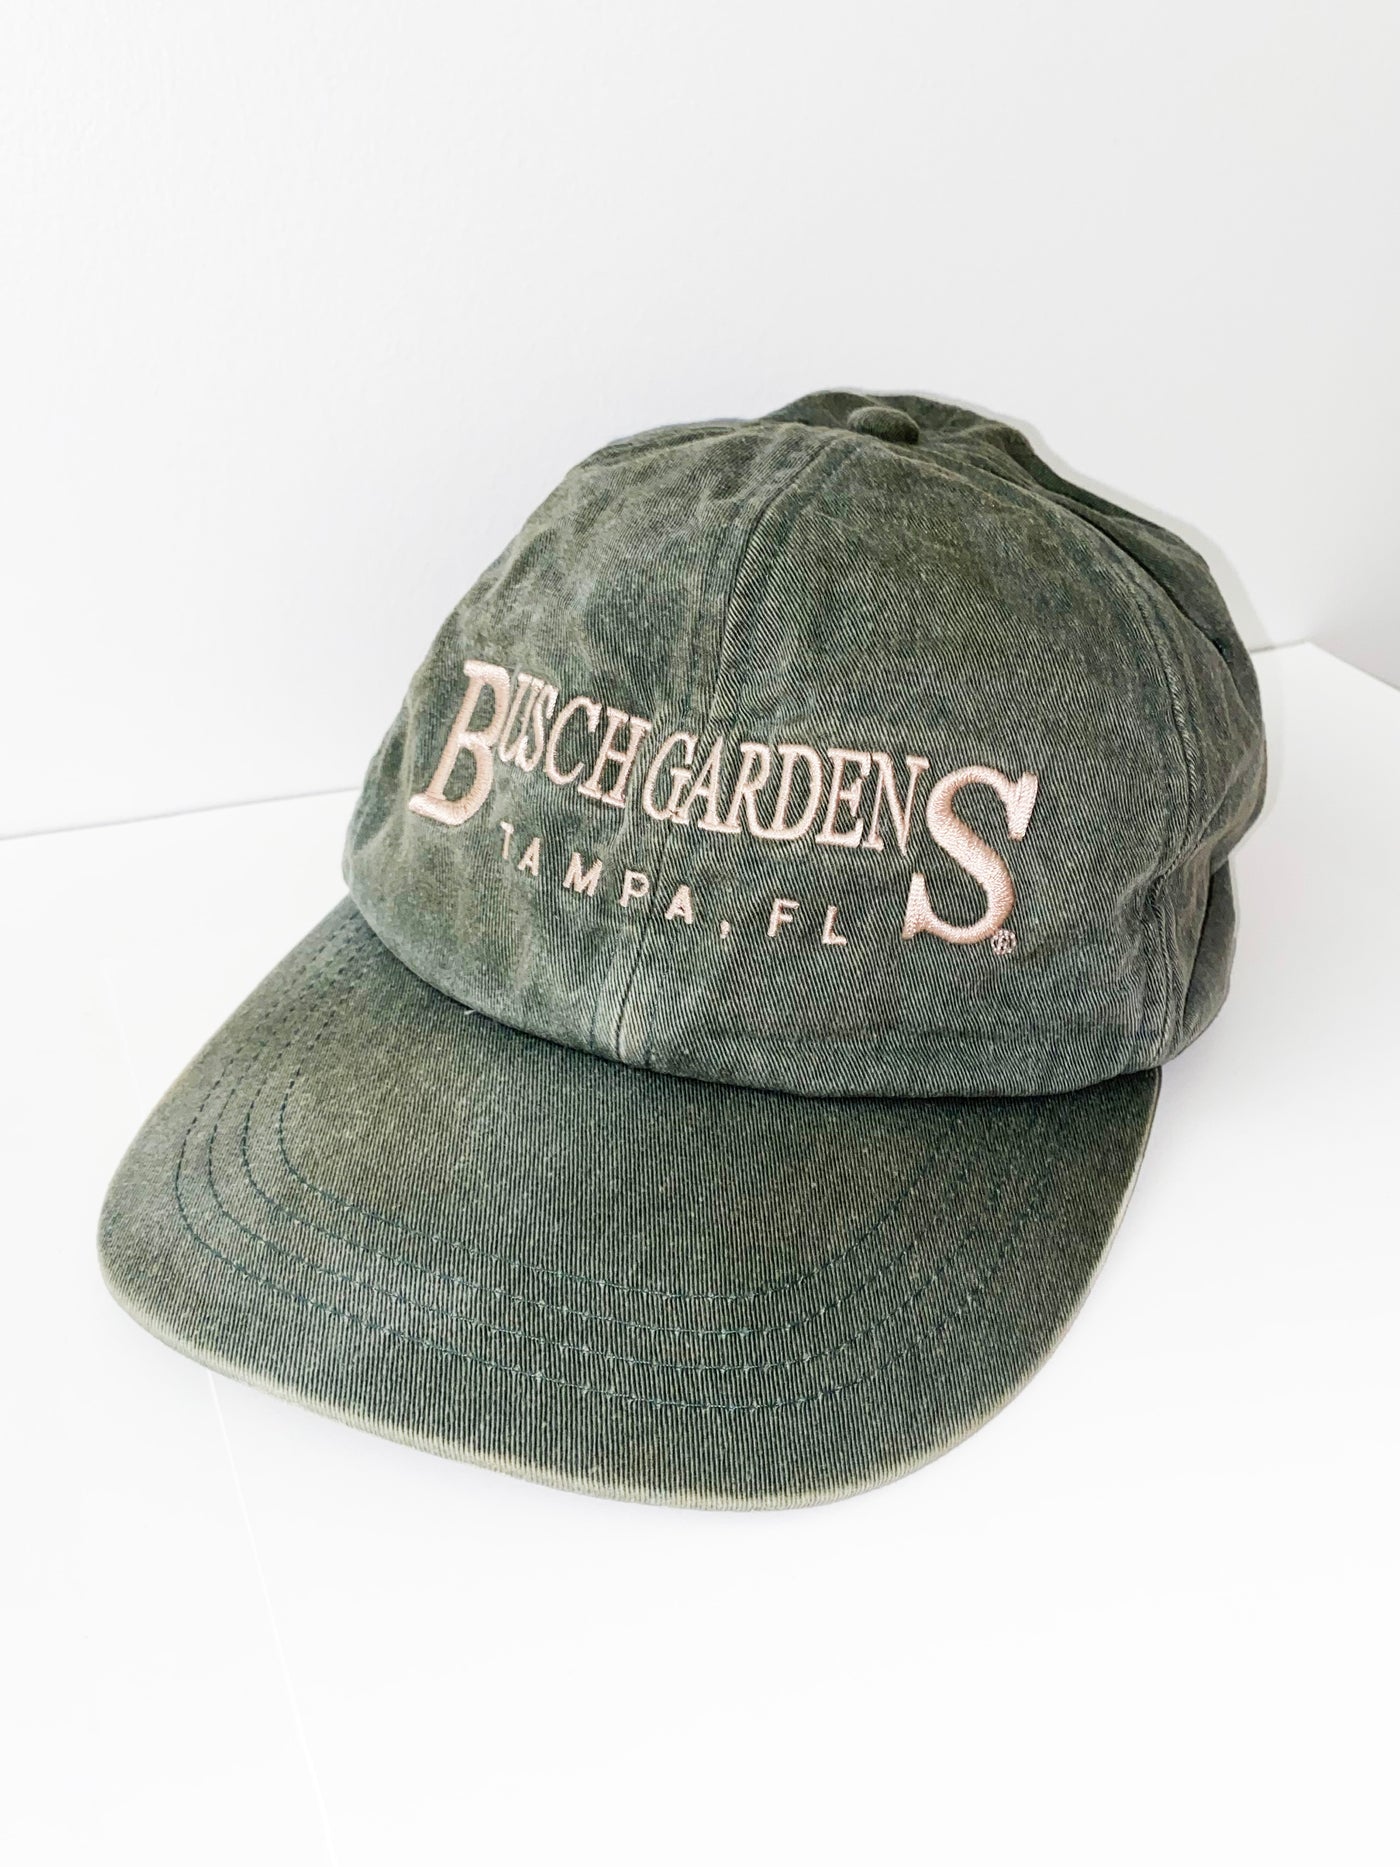 Vintage Busch Gardens Strapback Dad Hat